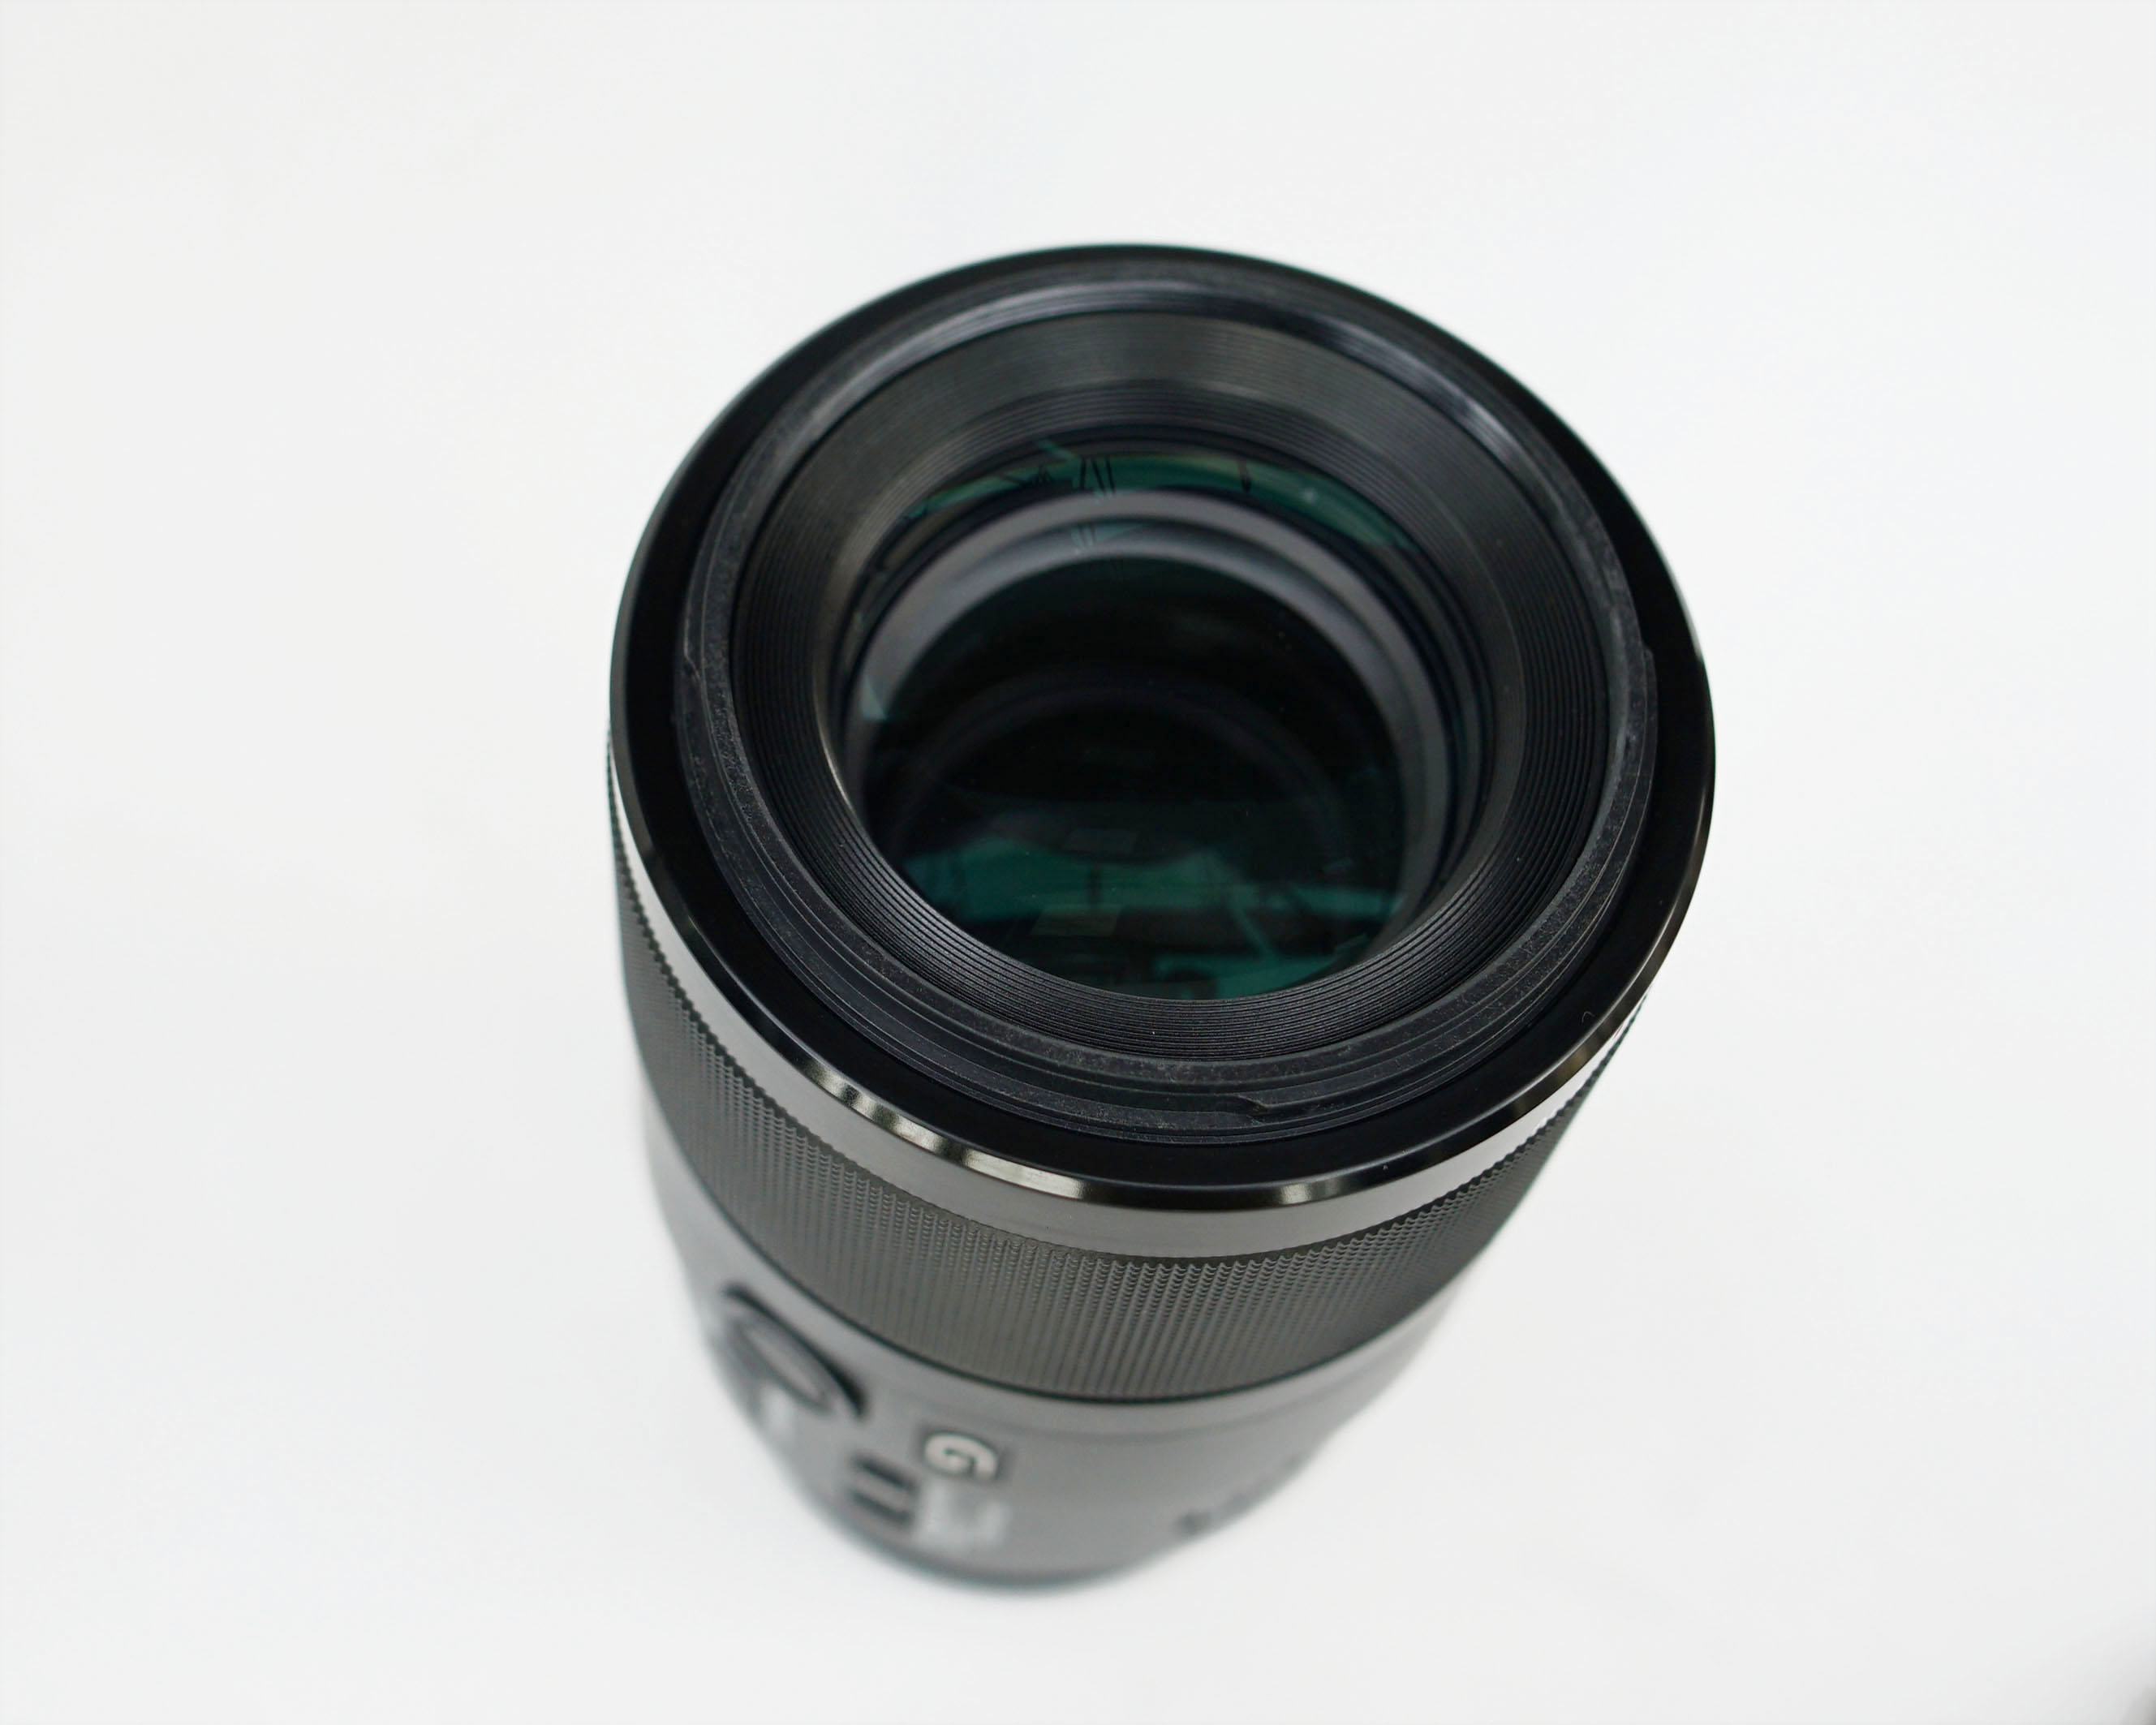 Ống kính Sony FE 90mm f/2.8 Macro G OSS